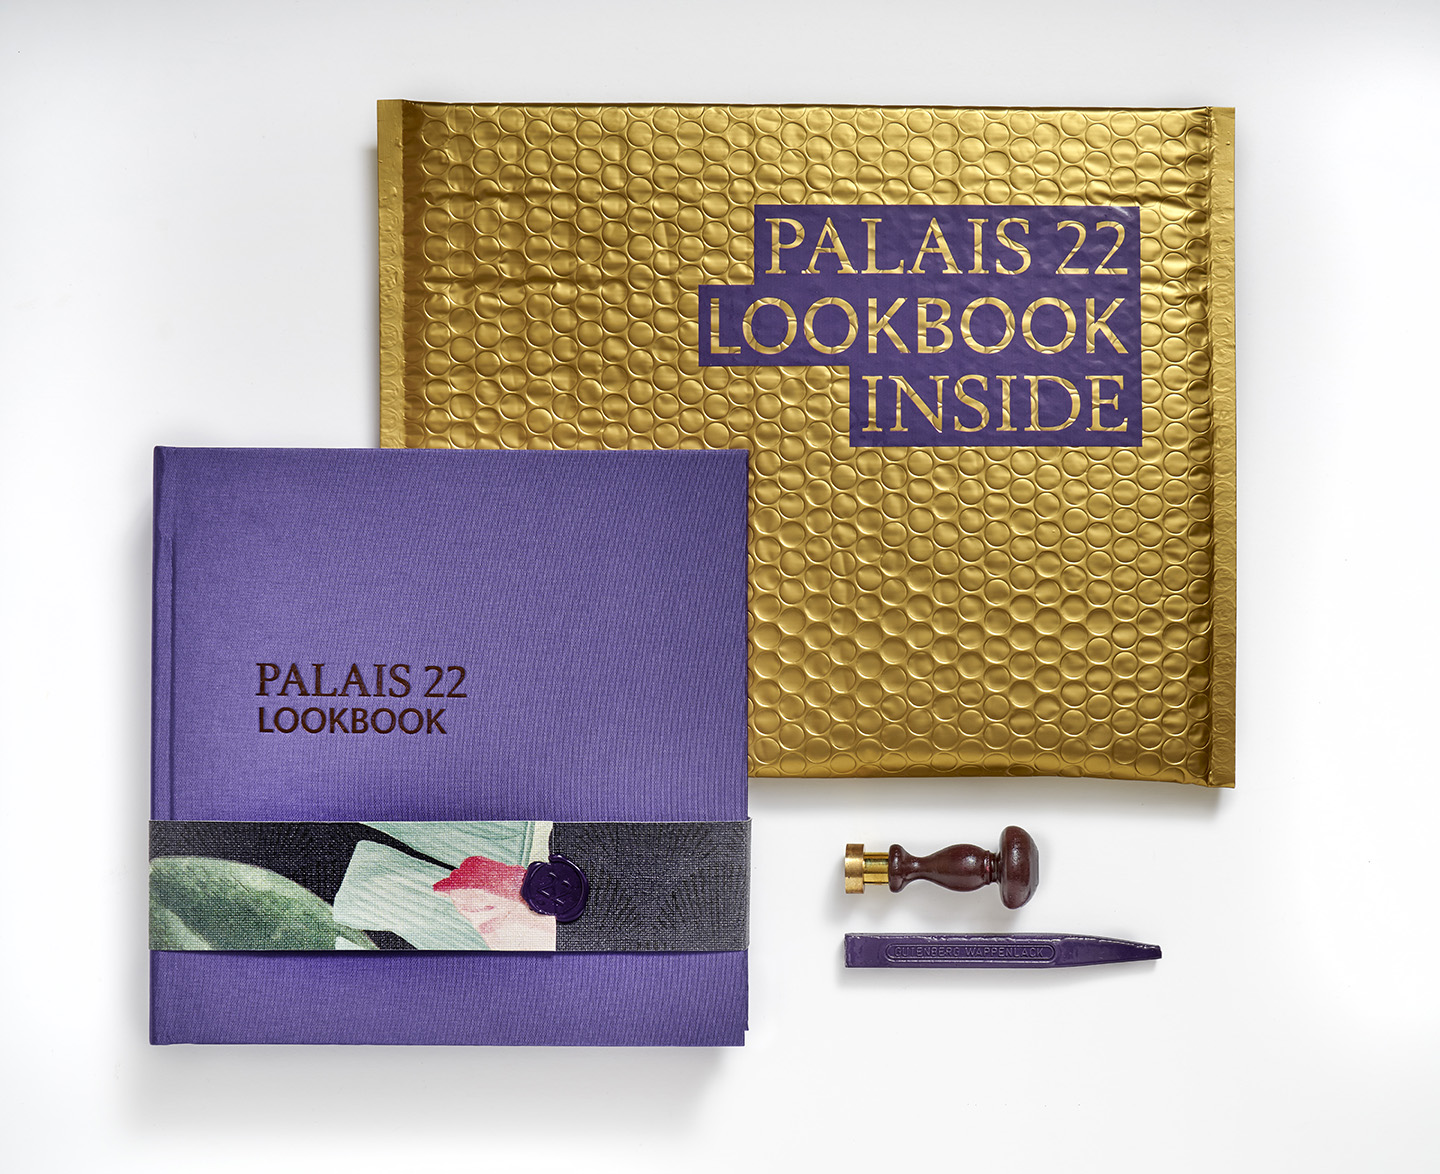 Palais 22 Lookbook